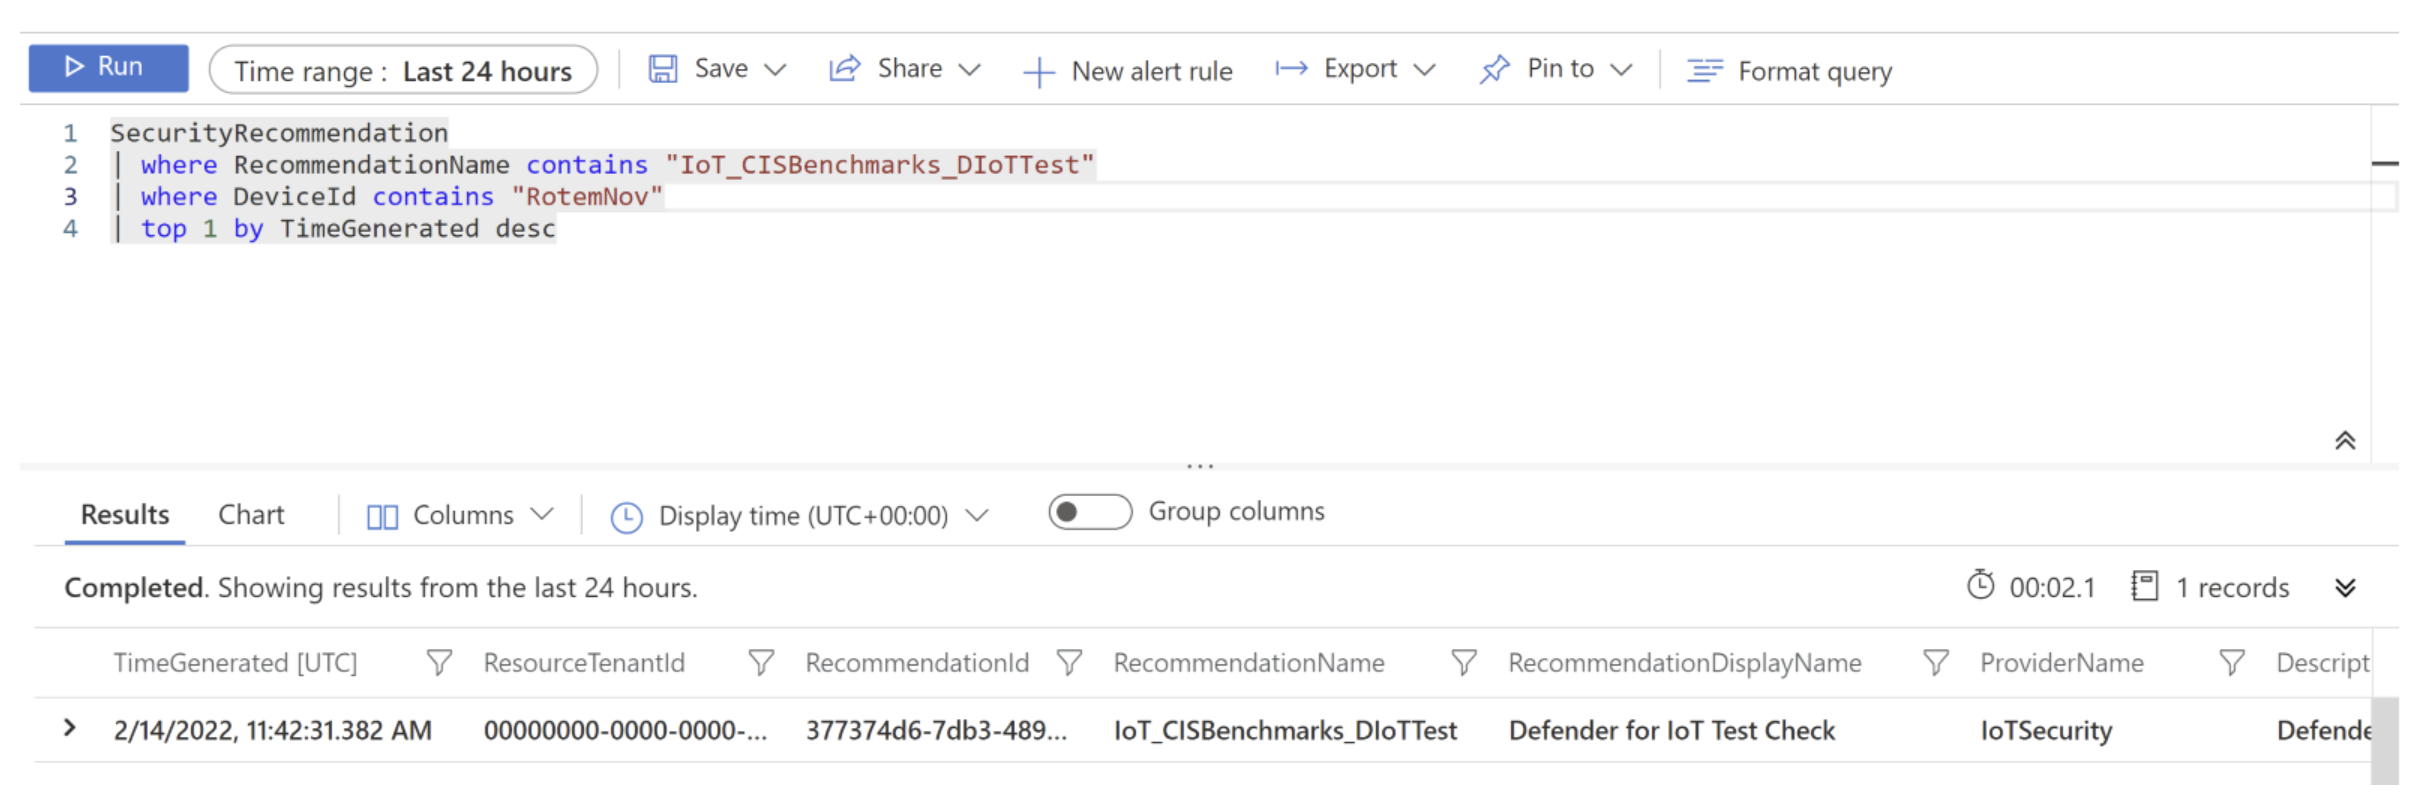 Képernyőkép a Log Analyticsben futtatott IoT_CISBenchmarks_DIoTTest lekérdezésről.